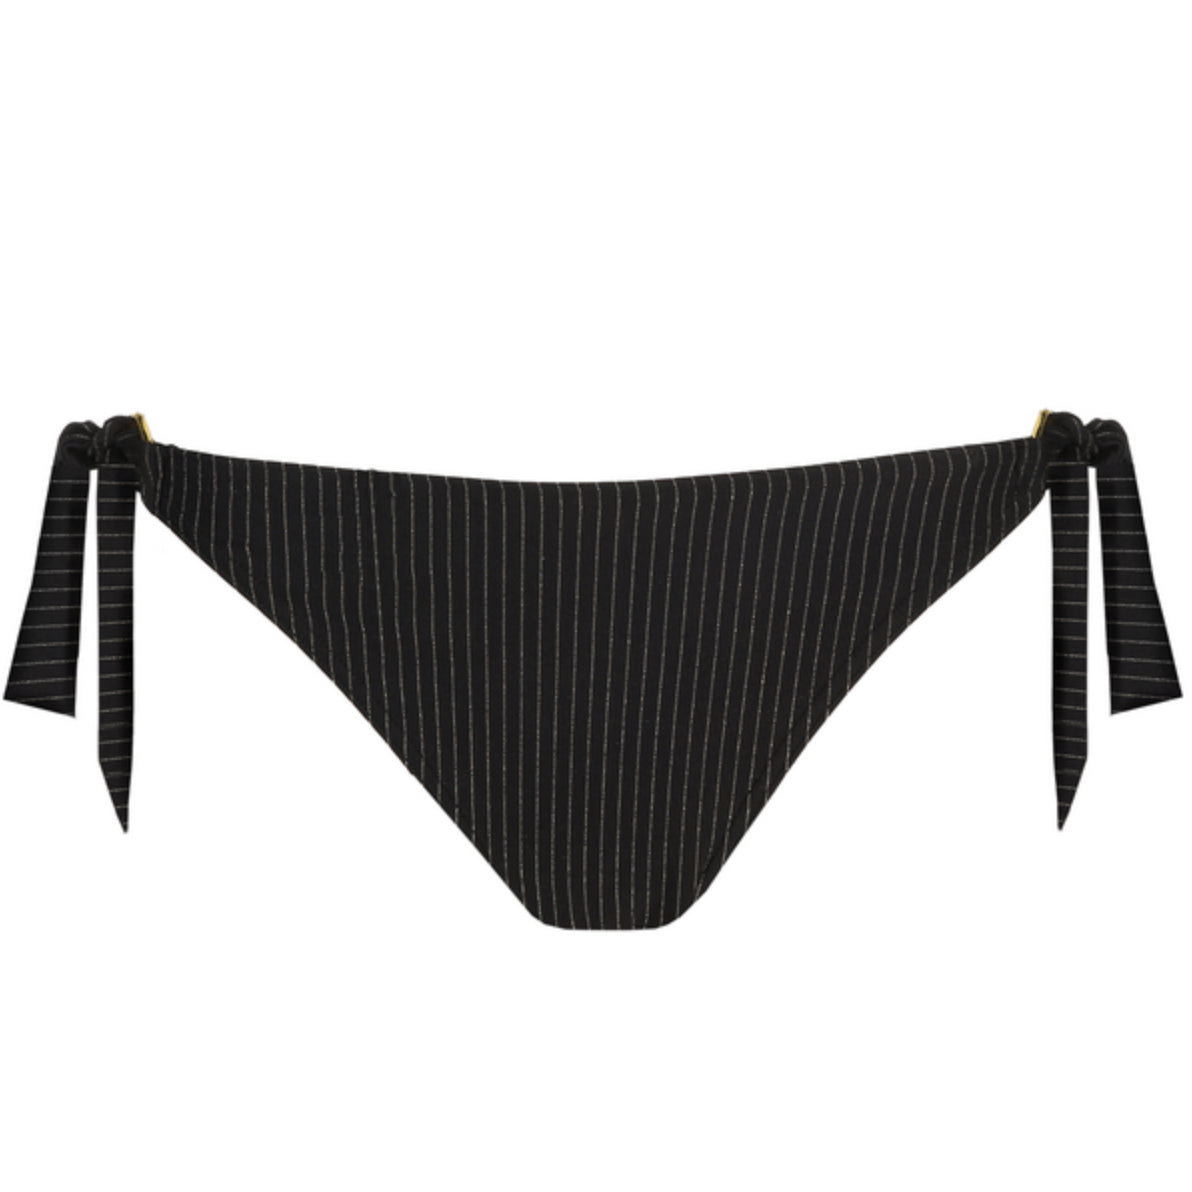 Prima Donna Solta Side-Tie Bikini Bottom 4010153-Swimwear-Prima Donna-Black-Small-Anna Bella Fine Lingerie, Reveal Your Most Gorgeous Self!